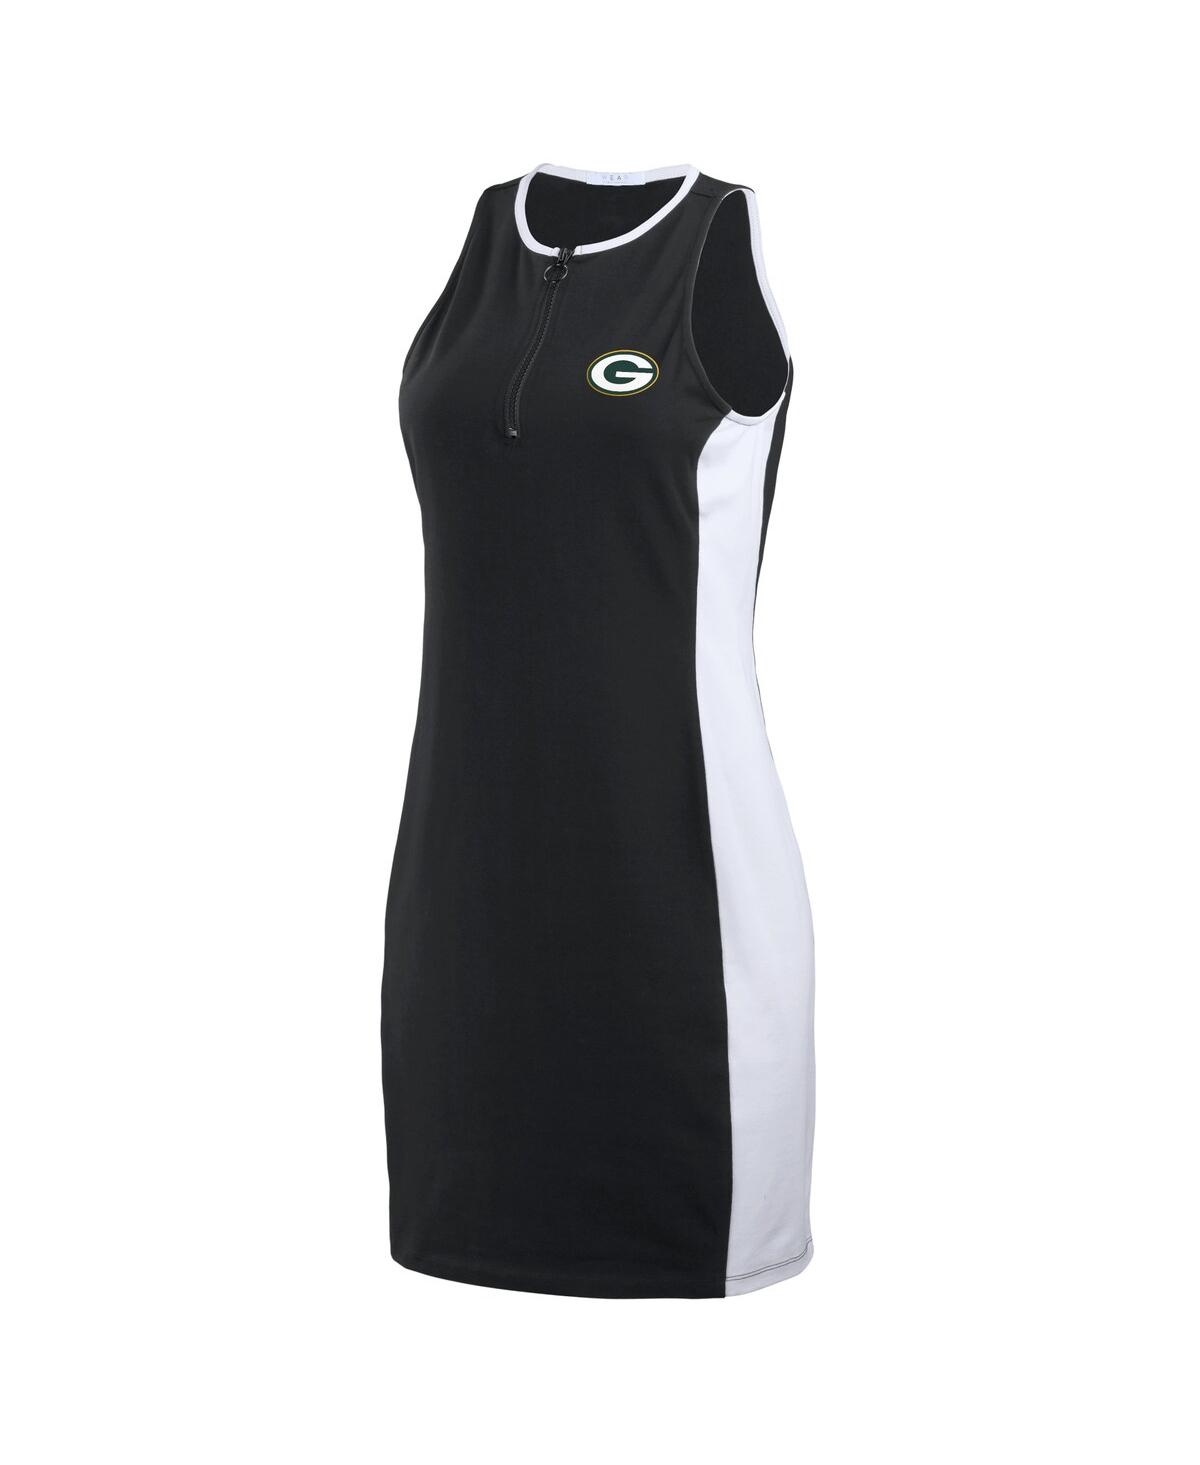 Shop Wear By Erin Andrews Women's  Black Green Bay Packers Bodyframing Tank Dress